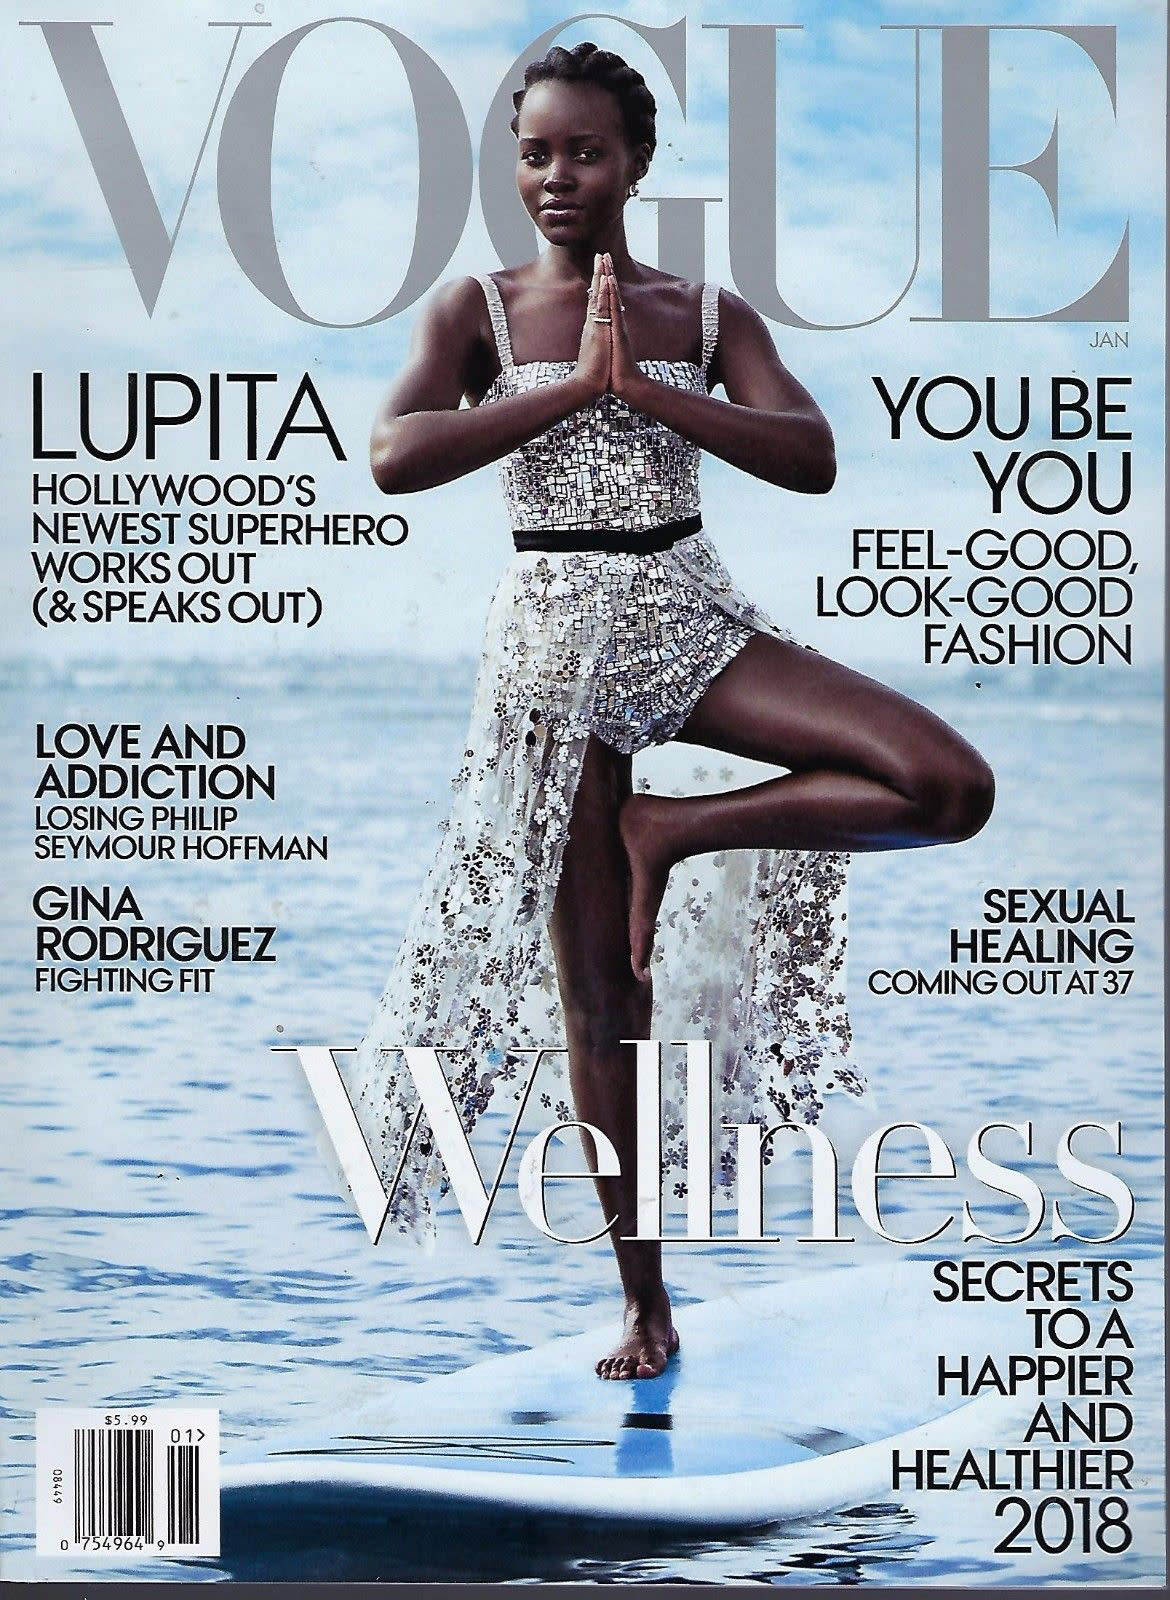 Vogue Wellness Cover 